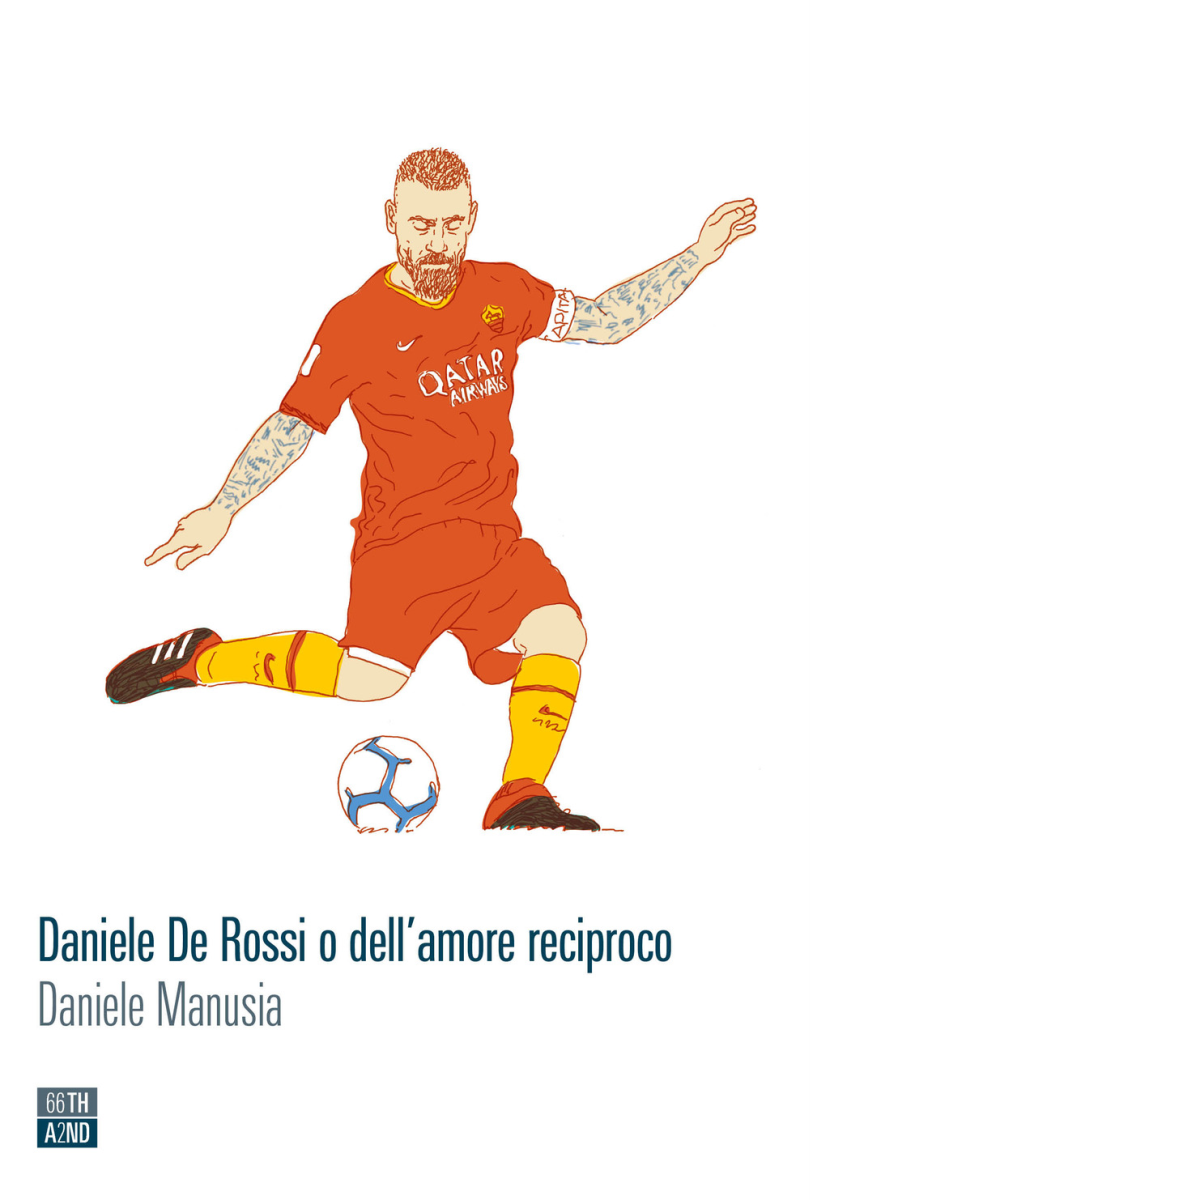 Daniele De Rossi o delL'amore reciproco di Daniele Manusia,  2020,  66th And 2n libro usato